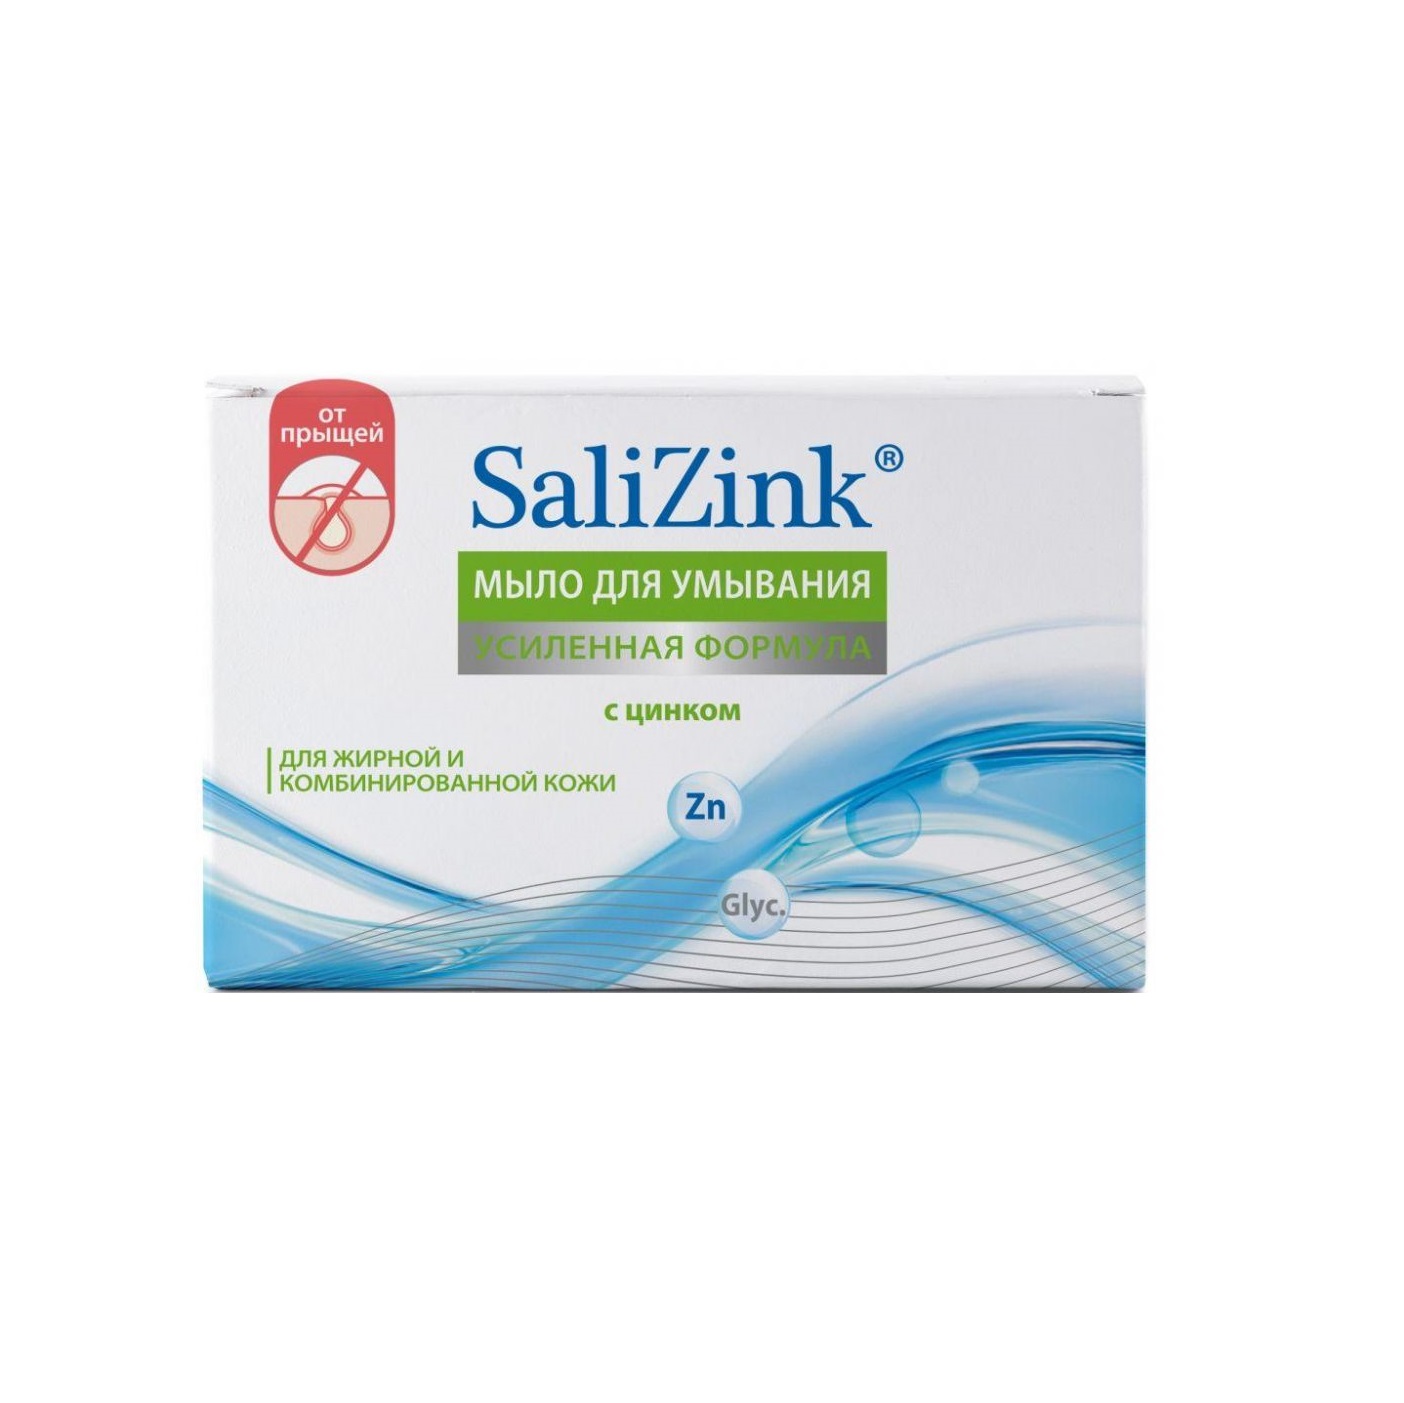 Салицинк мыло для умывания для жирной и комбинированной кожи с цинком 100гр